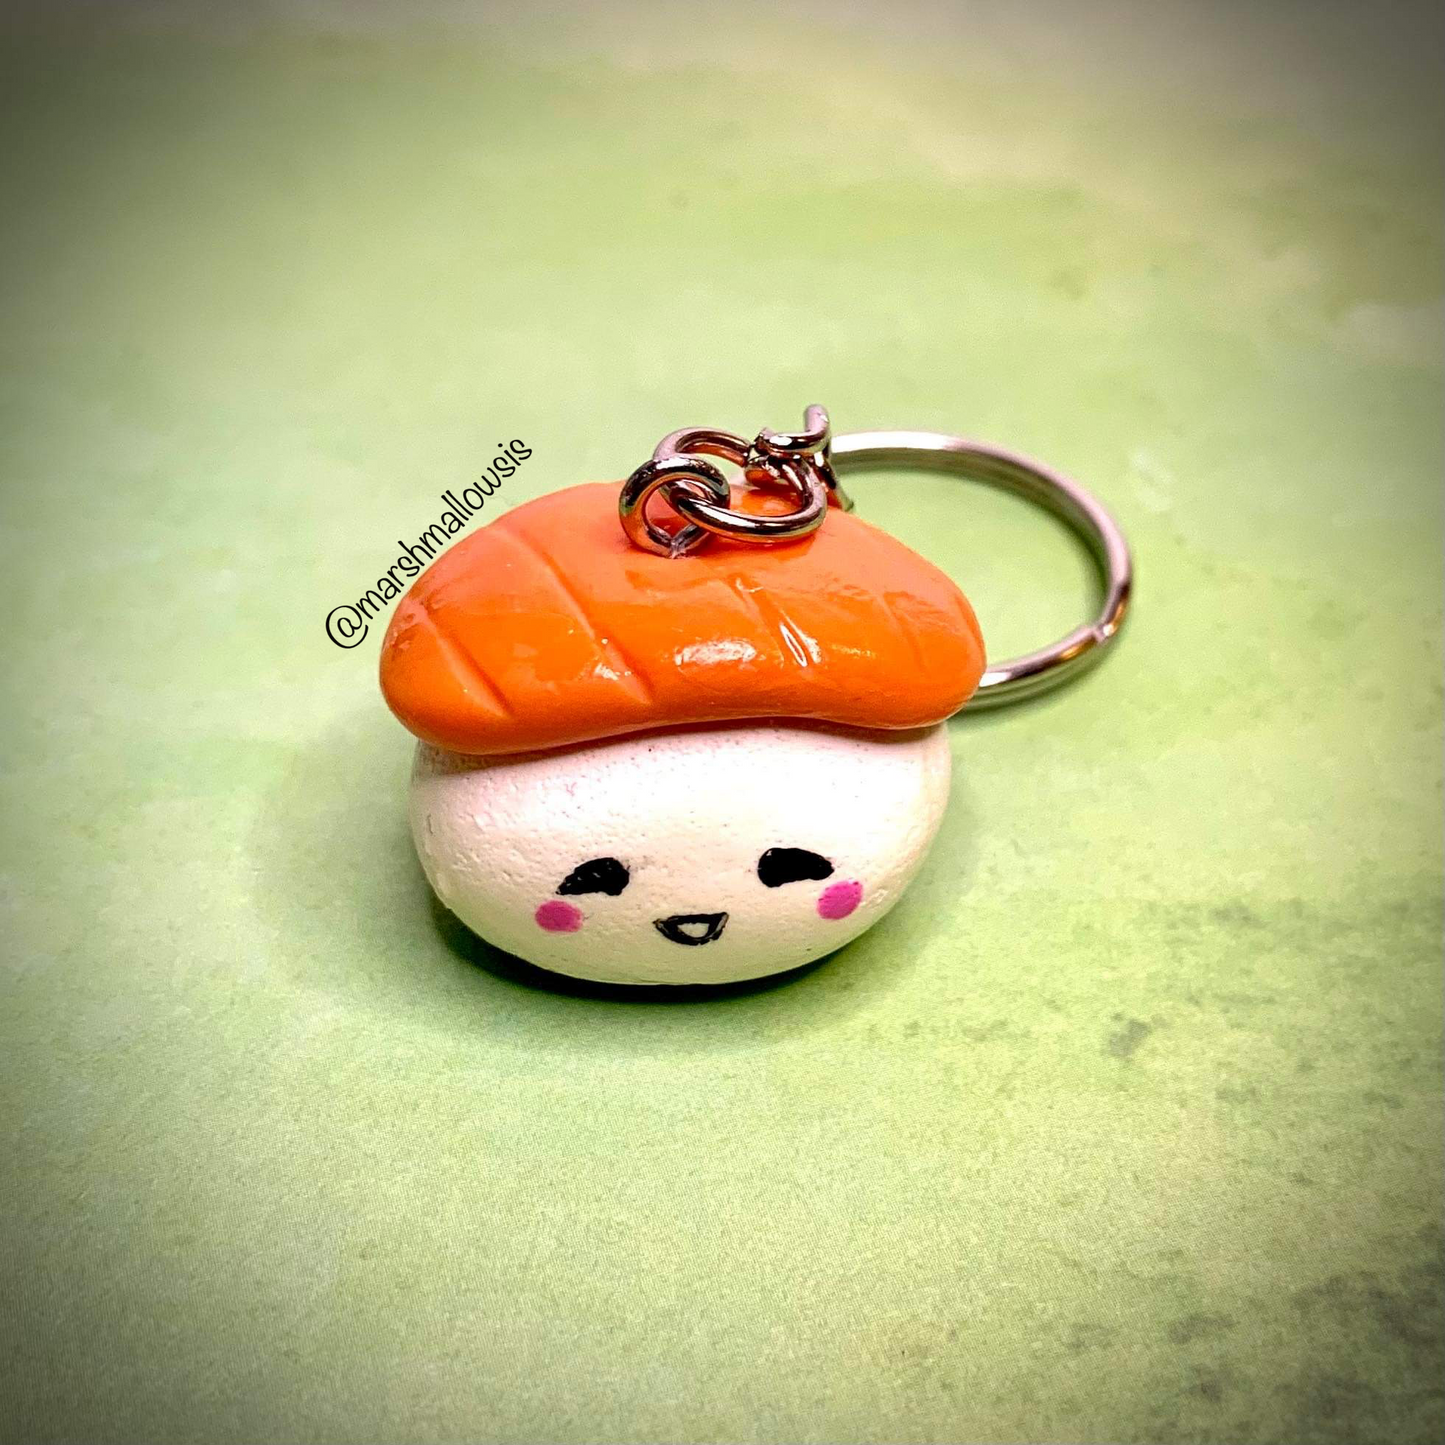 Sushi Keychain